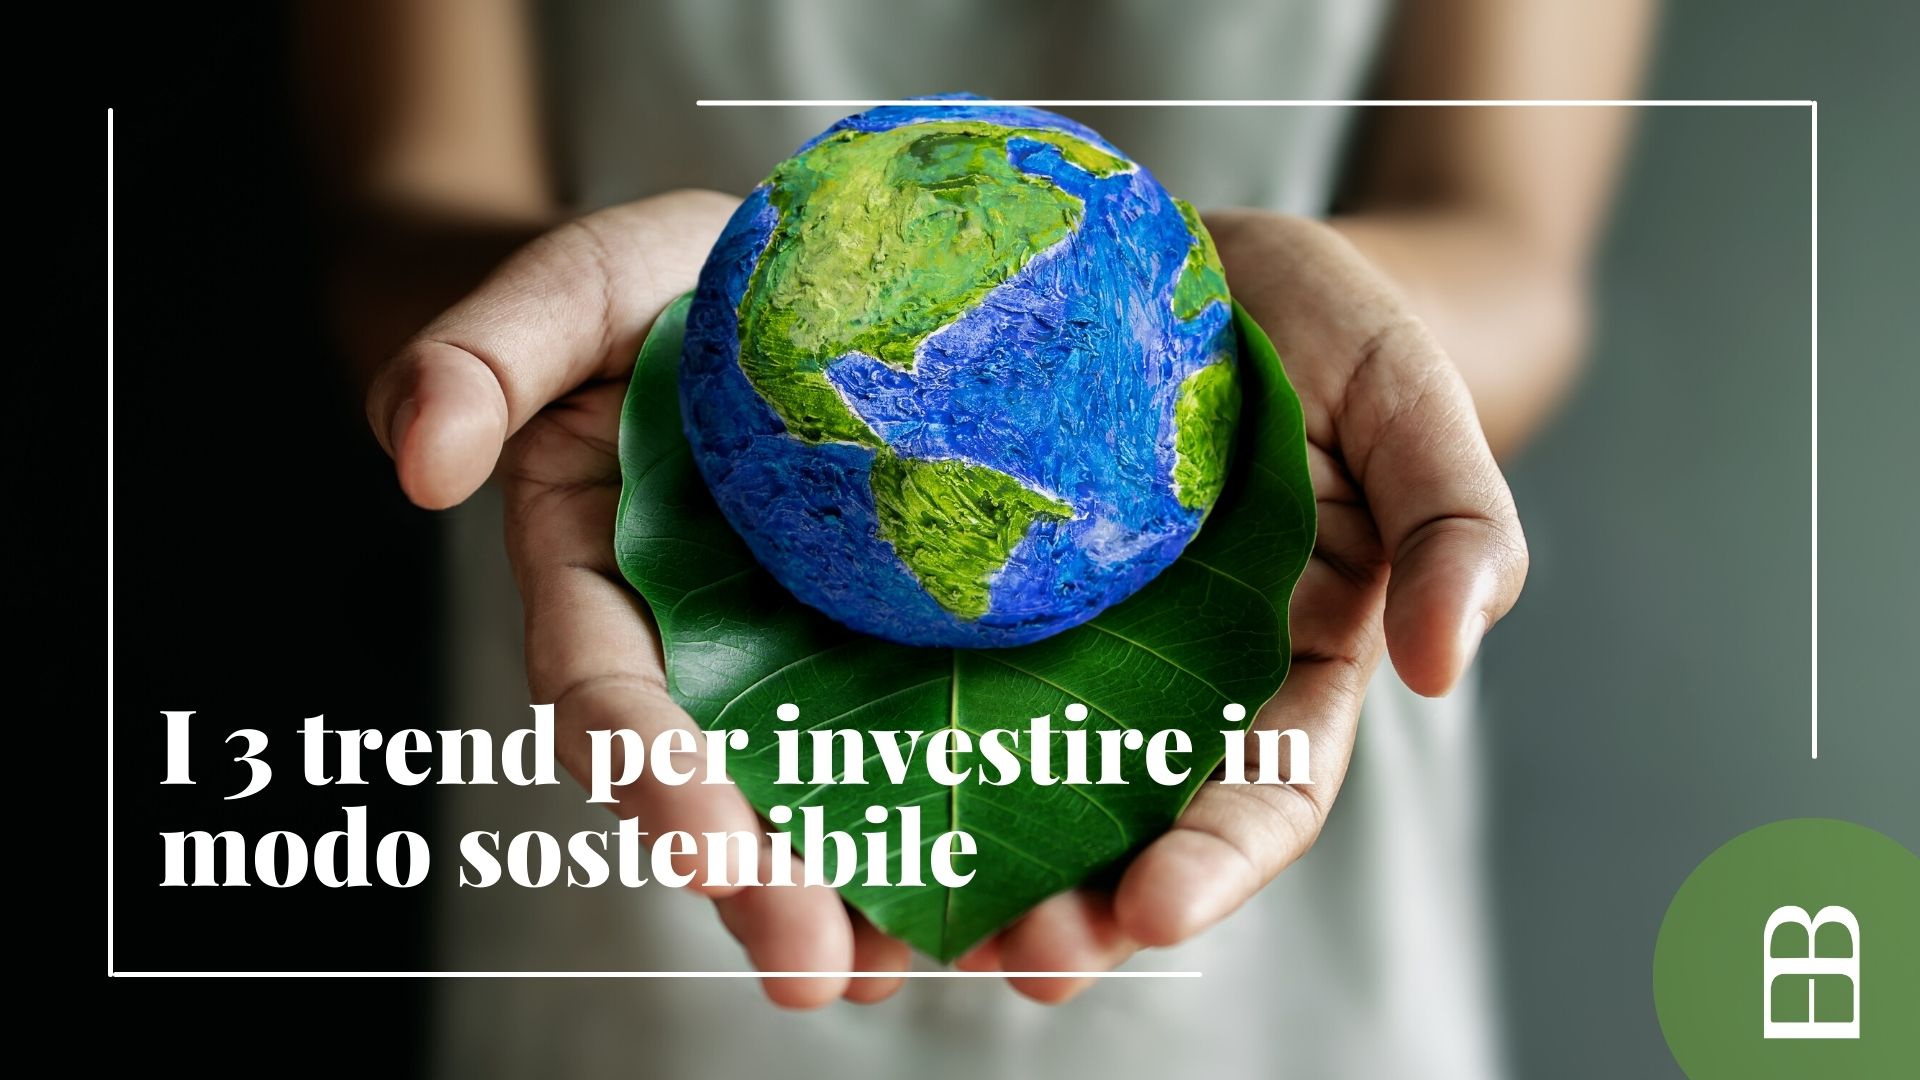 I 3 trend per investire in modo sostenibile